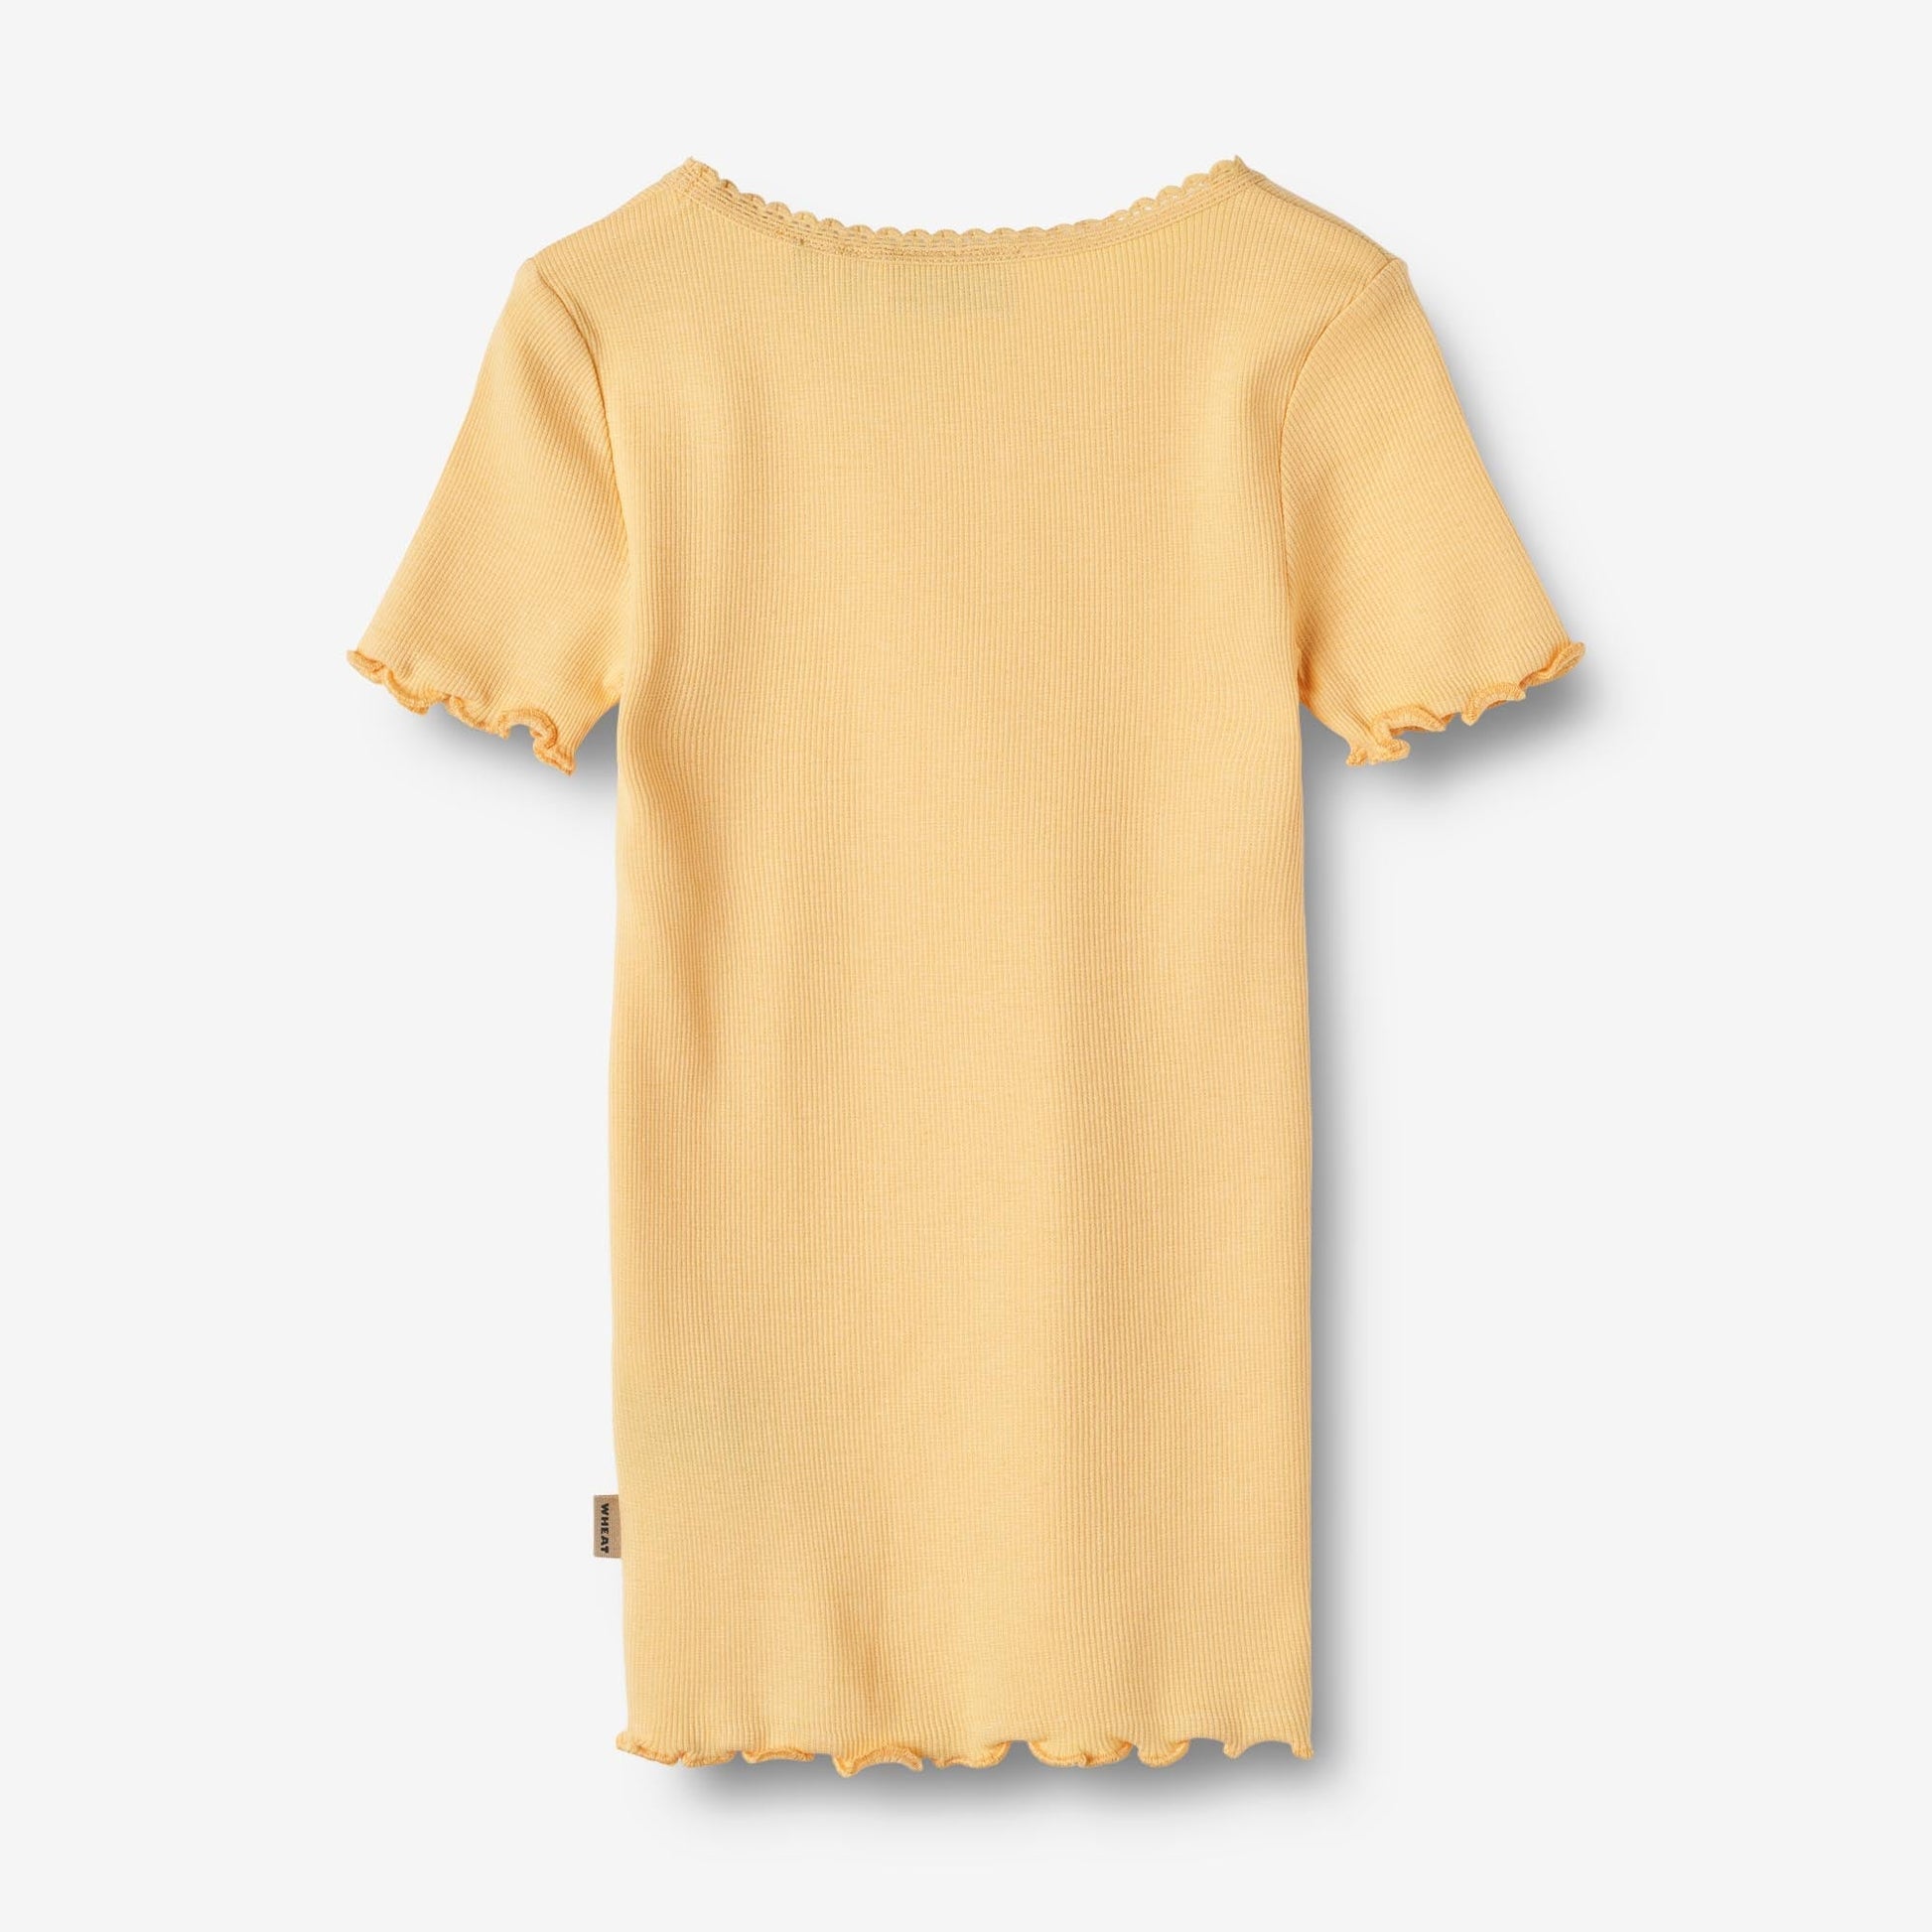 Wheat 'Katie' S/S Children's Rib T-Shirt - Pale Apricot